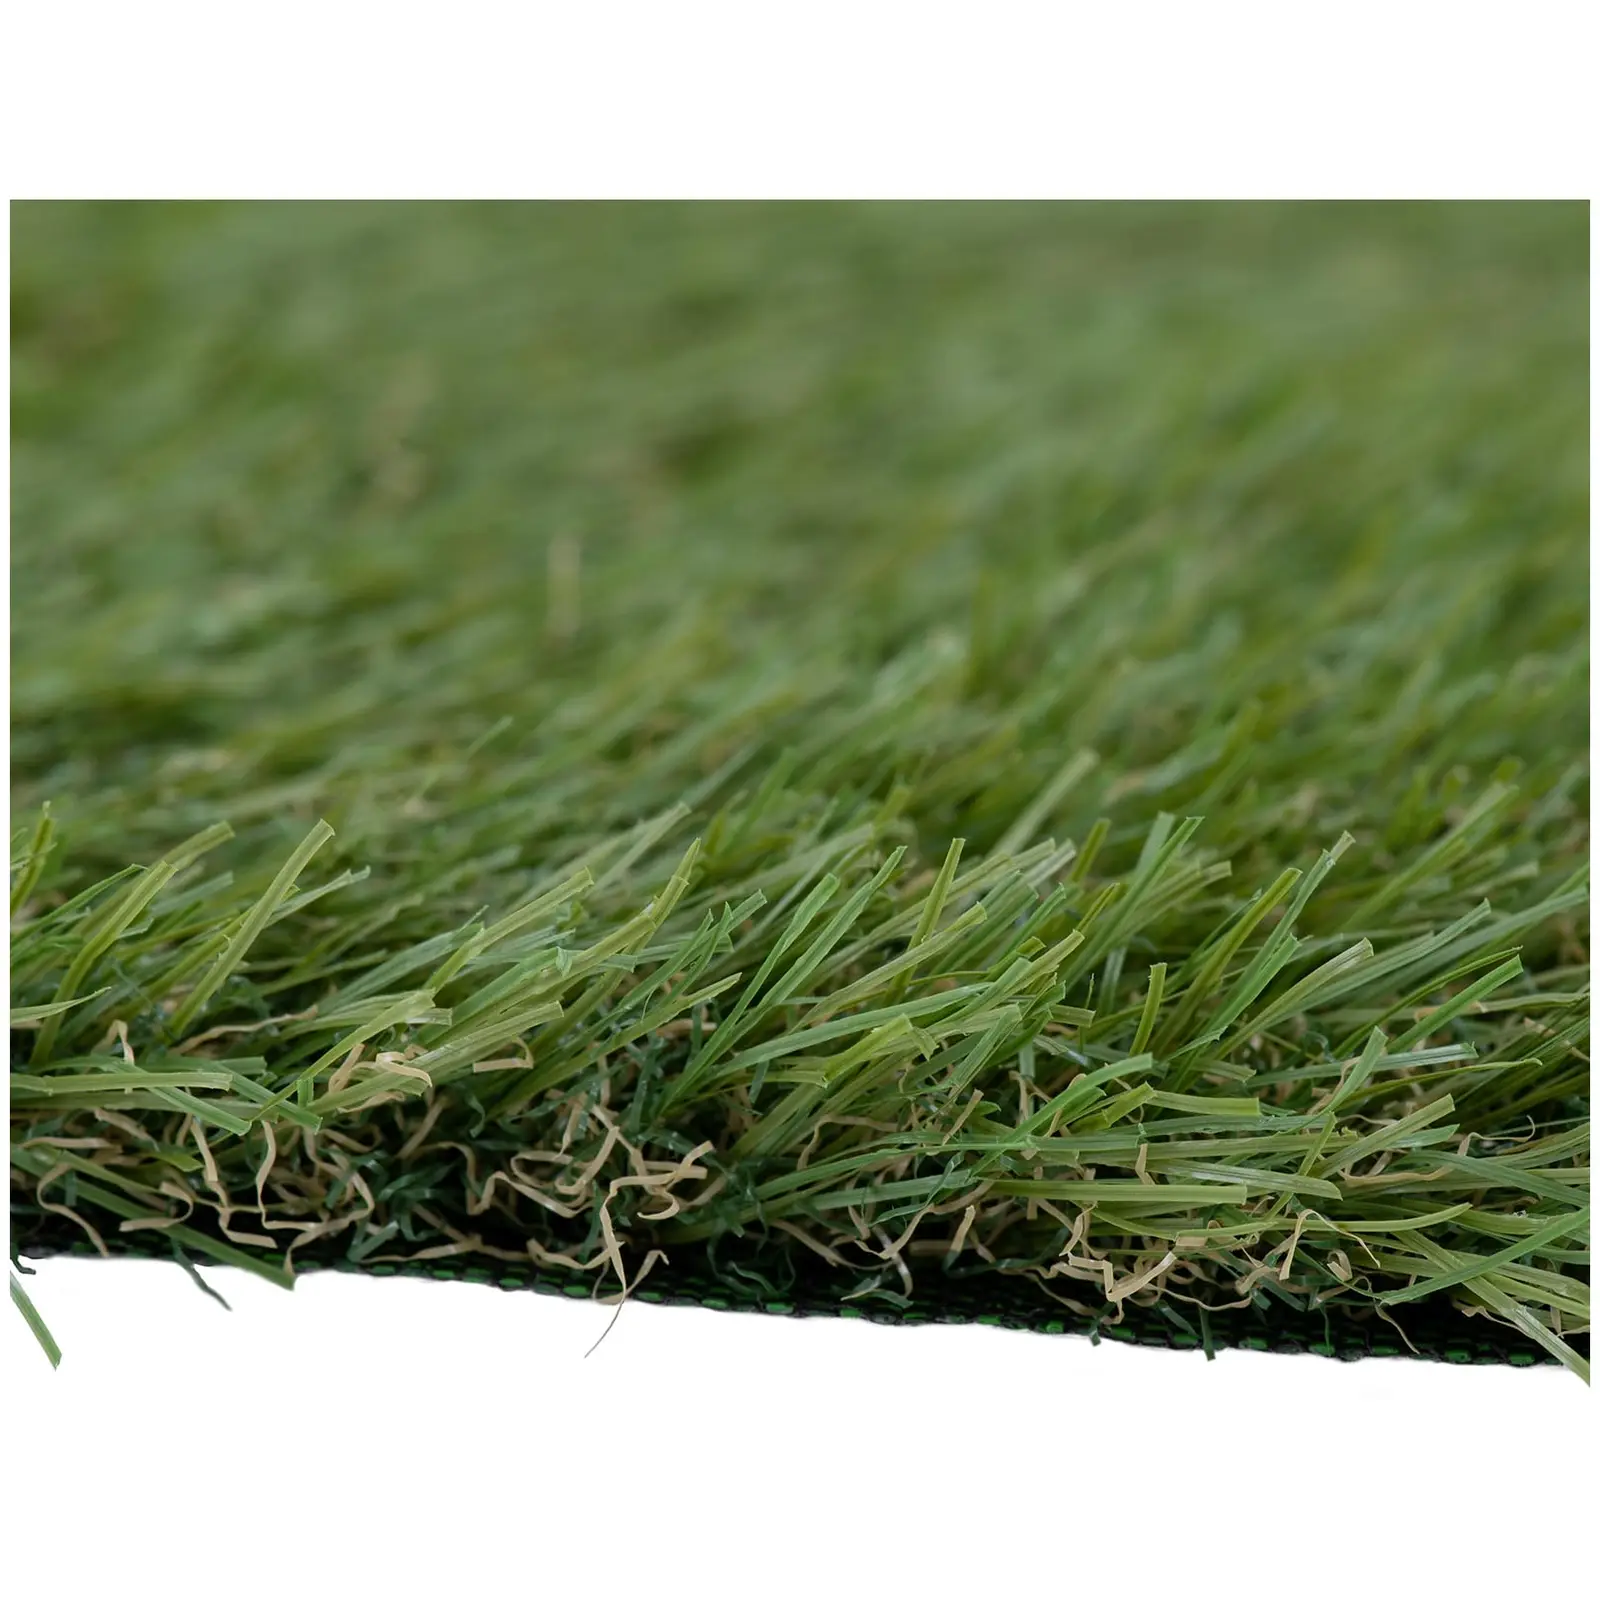 Sztuczna trawa - 1005 x 100 cm - wysokość: 30 mm - szybkość ściegu: 14/10 cm - odporność na promieniowanie UV